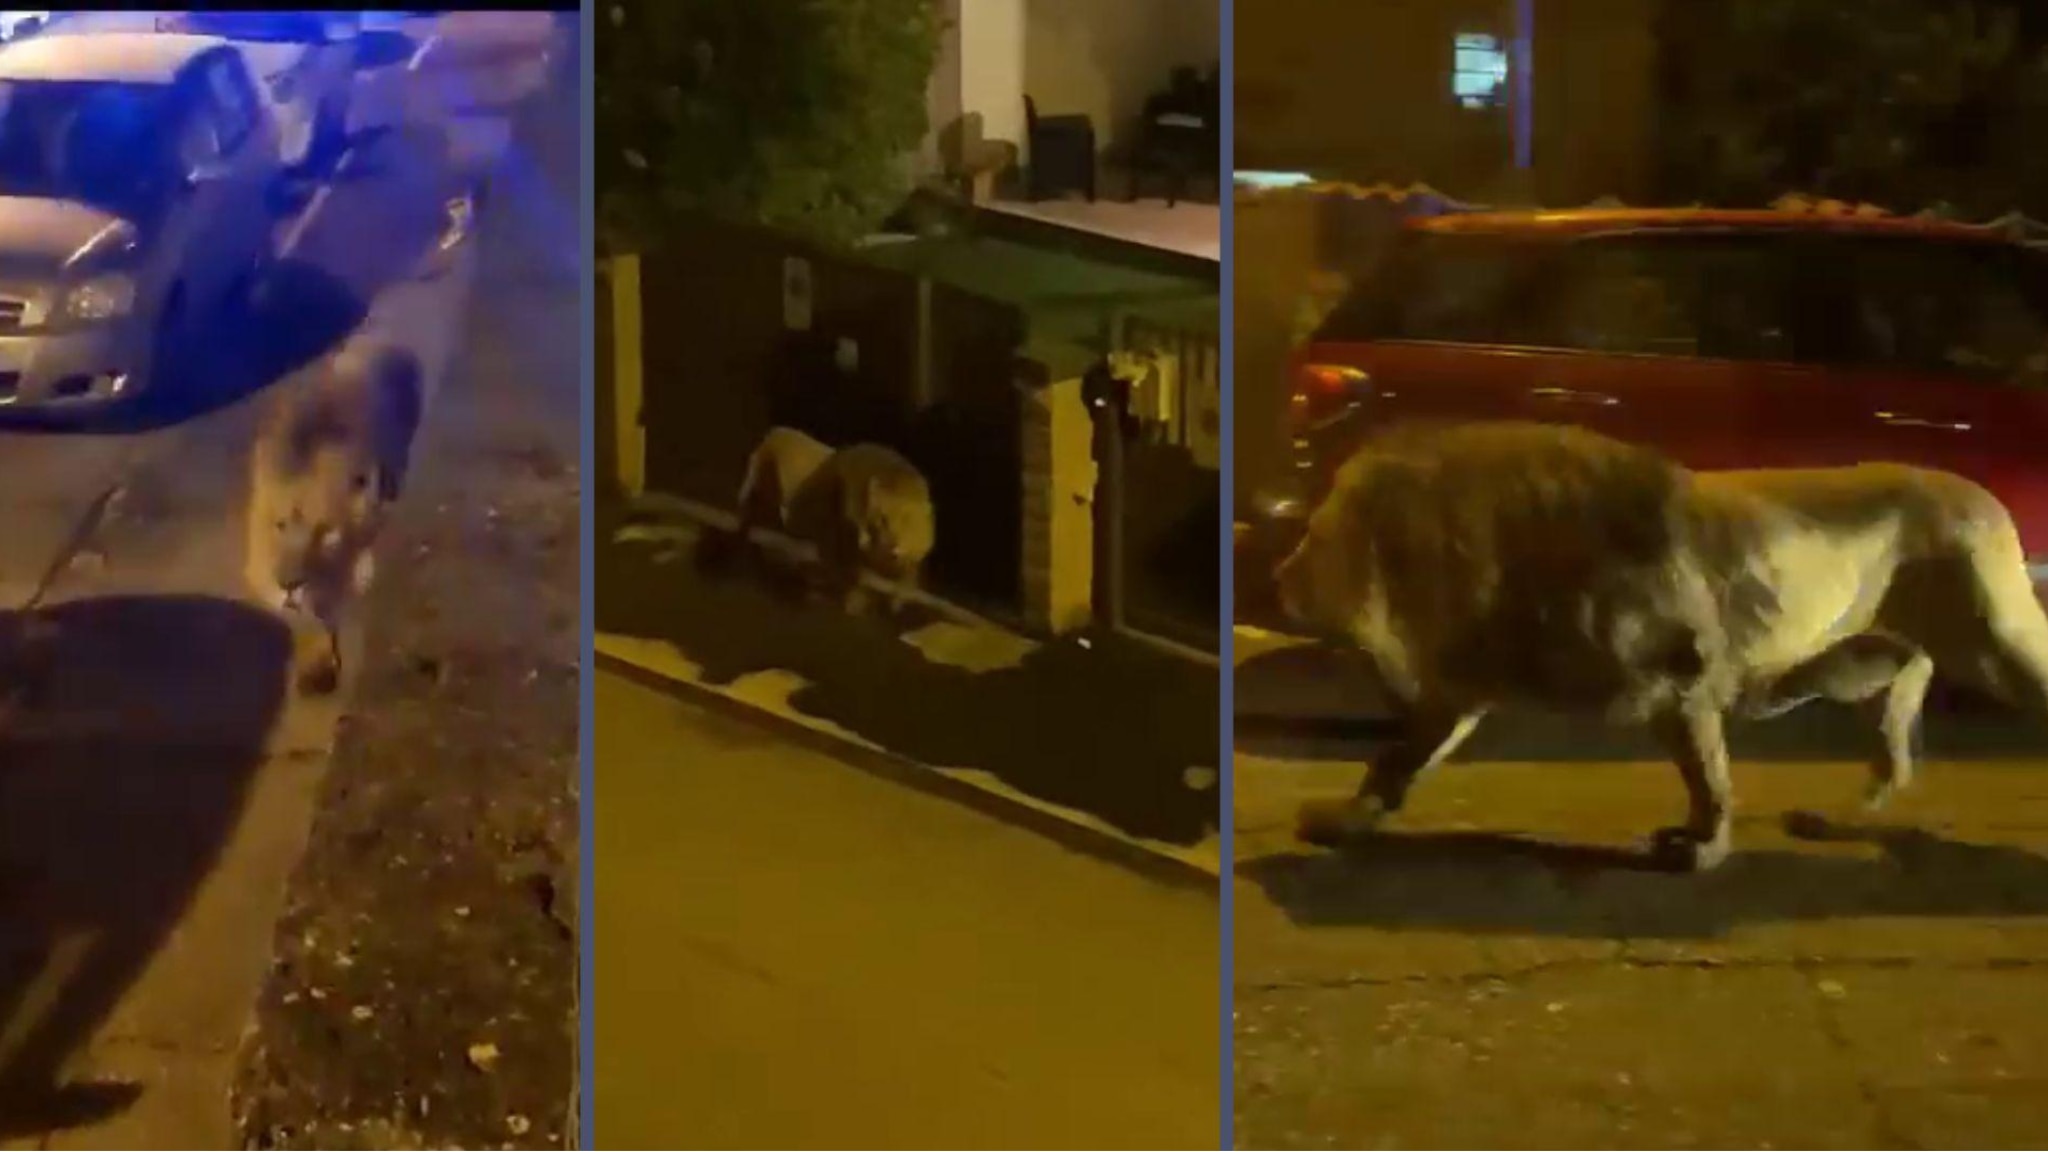 I video del leone per la strada a Ladispoli. Forze dell’ordine a caccia, il sindaco: “State a casa”